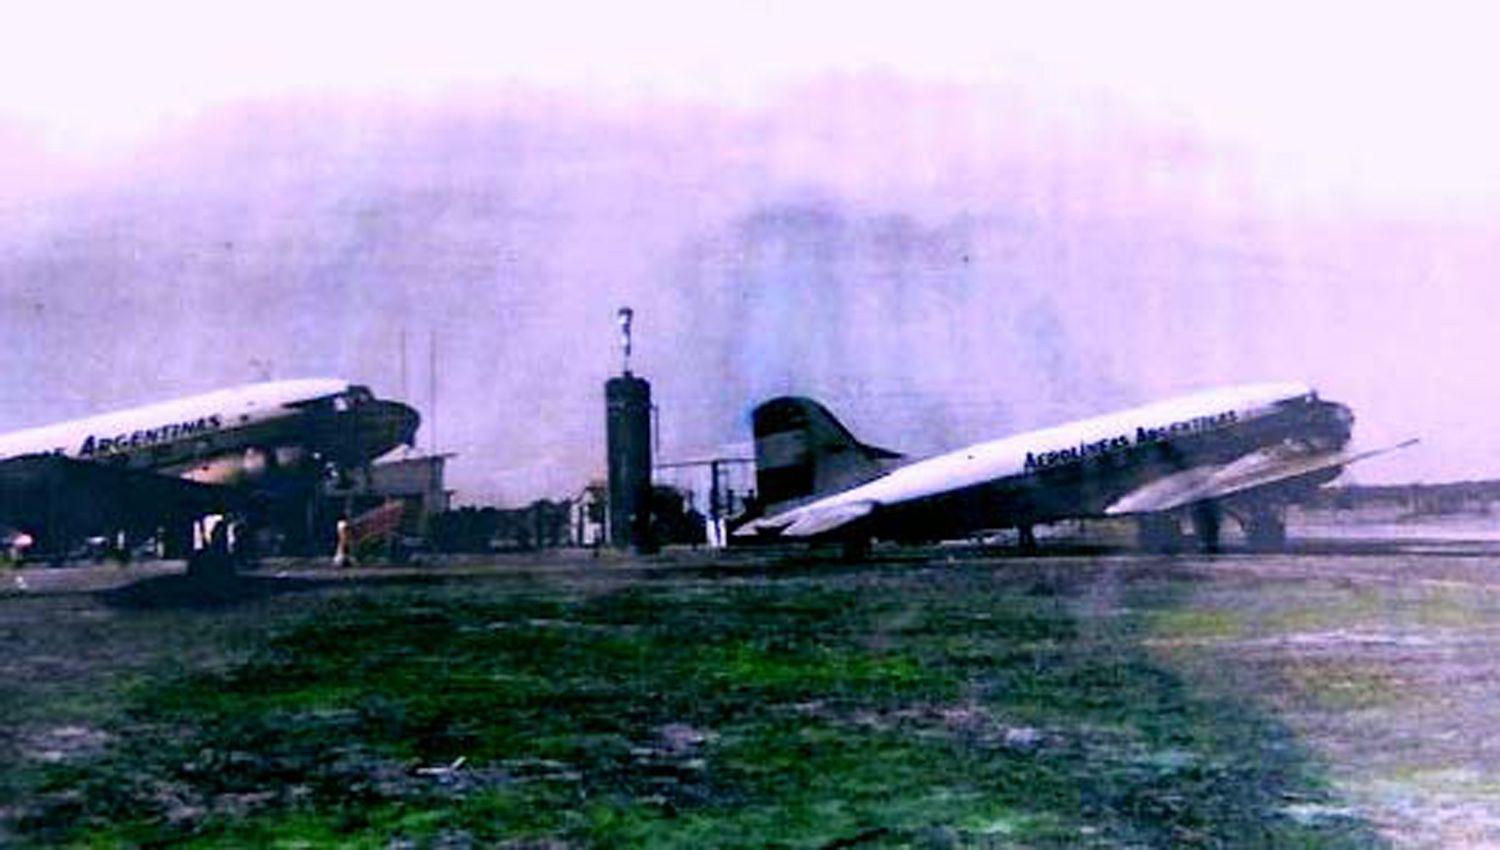 El viejo y desaparecido aeroacutedromo de Las Termas de Riacuteo Hondo